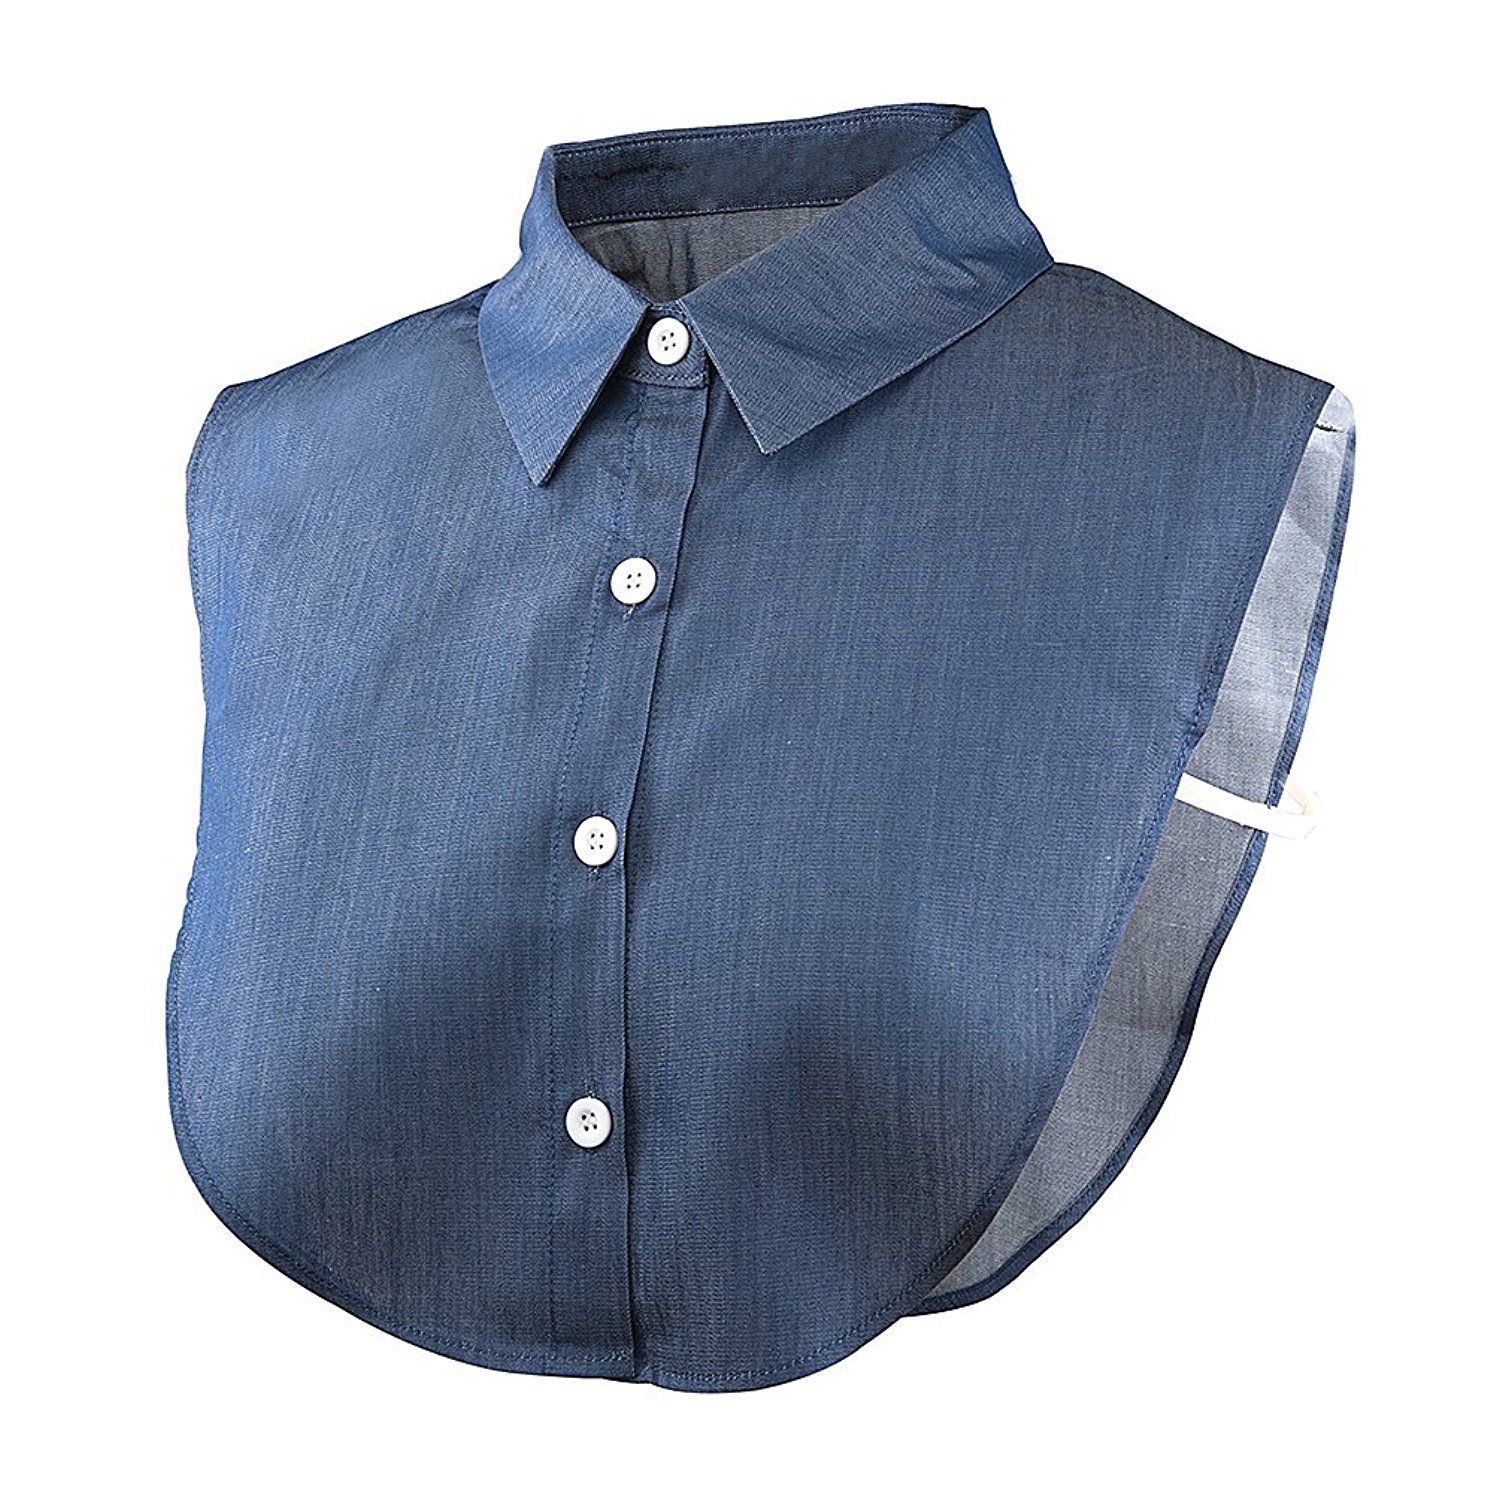 Alster  Herz Alster Herz Einsteckkragen Einsteckkragen, Blusenkragen, abnehmbare Hälfte Shirt Bluse A023, perfekt für einen gelungenen Business Look Jeans